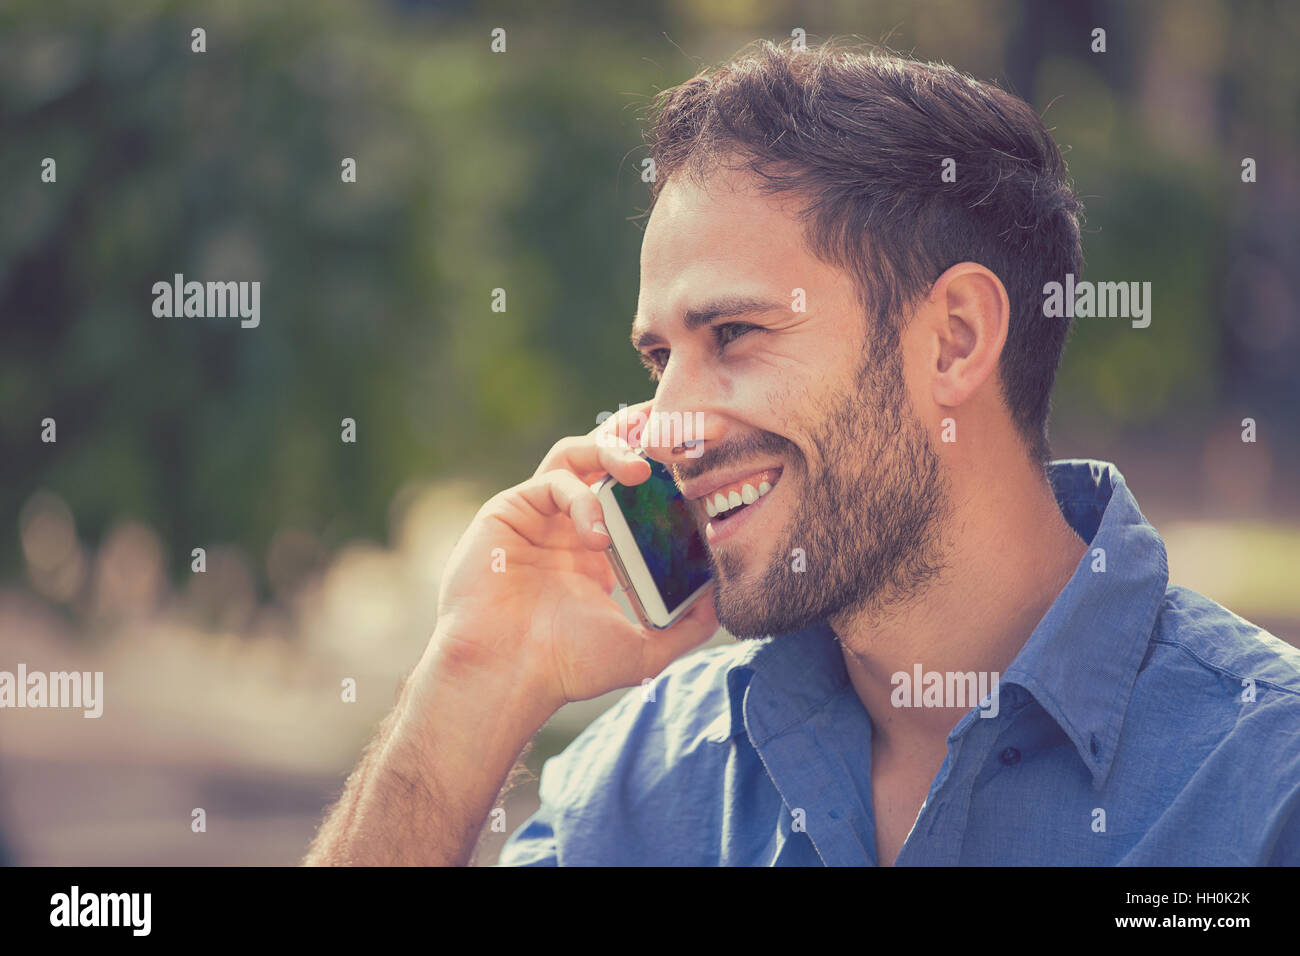 Happy smiling portrait beau jeune homme professionnel en milieu urbain à l'aide de parler sur téléphone intelligent. Businessman holding mobile smartphone Banque D'Images